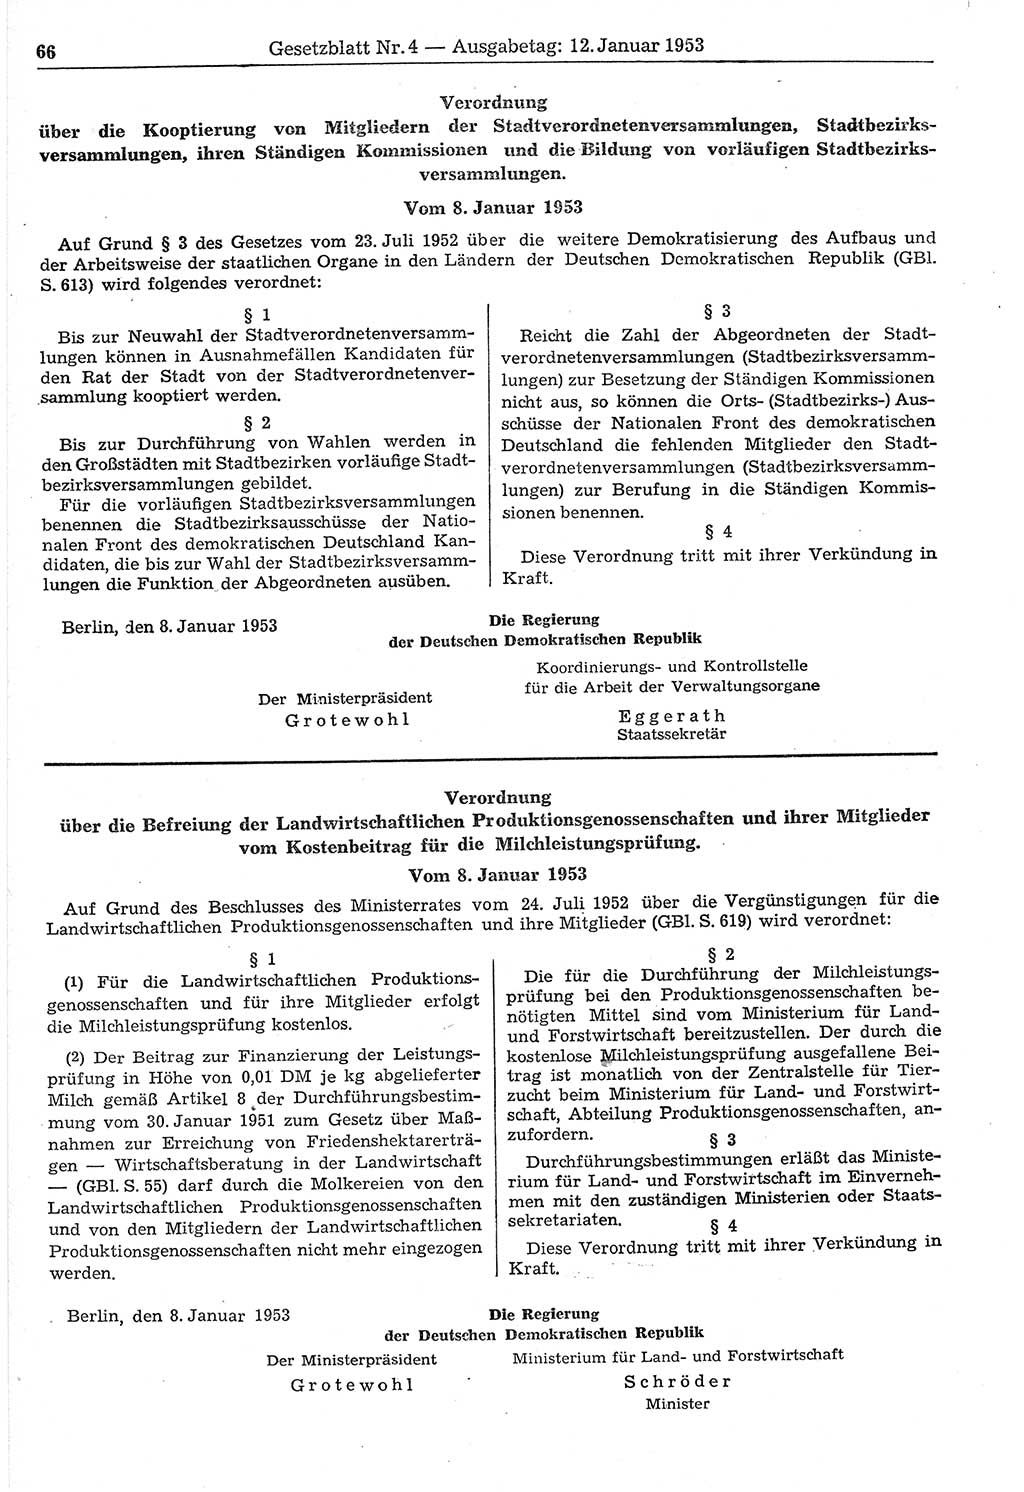 Gesetzblatt (GBl.) der Deutschen Demokratischen Republik (DDR) 1953, Seite 66 (GBl. DDR 1953, S. 66)